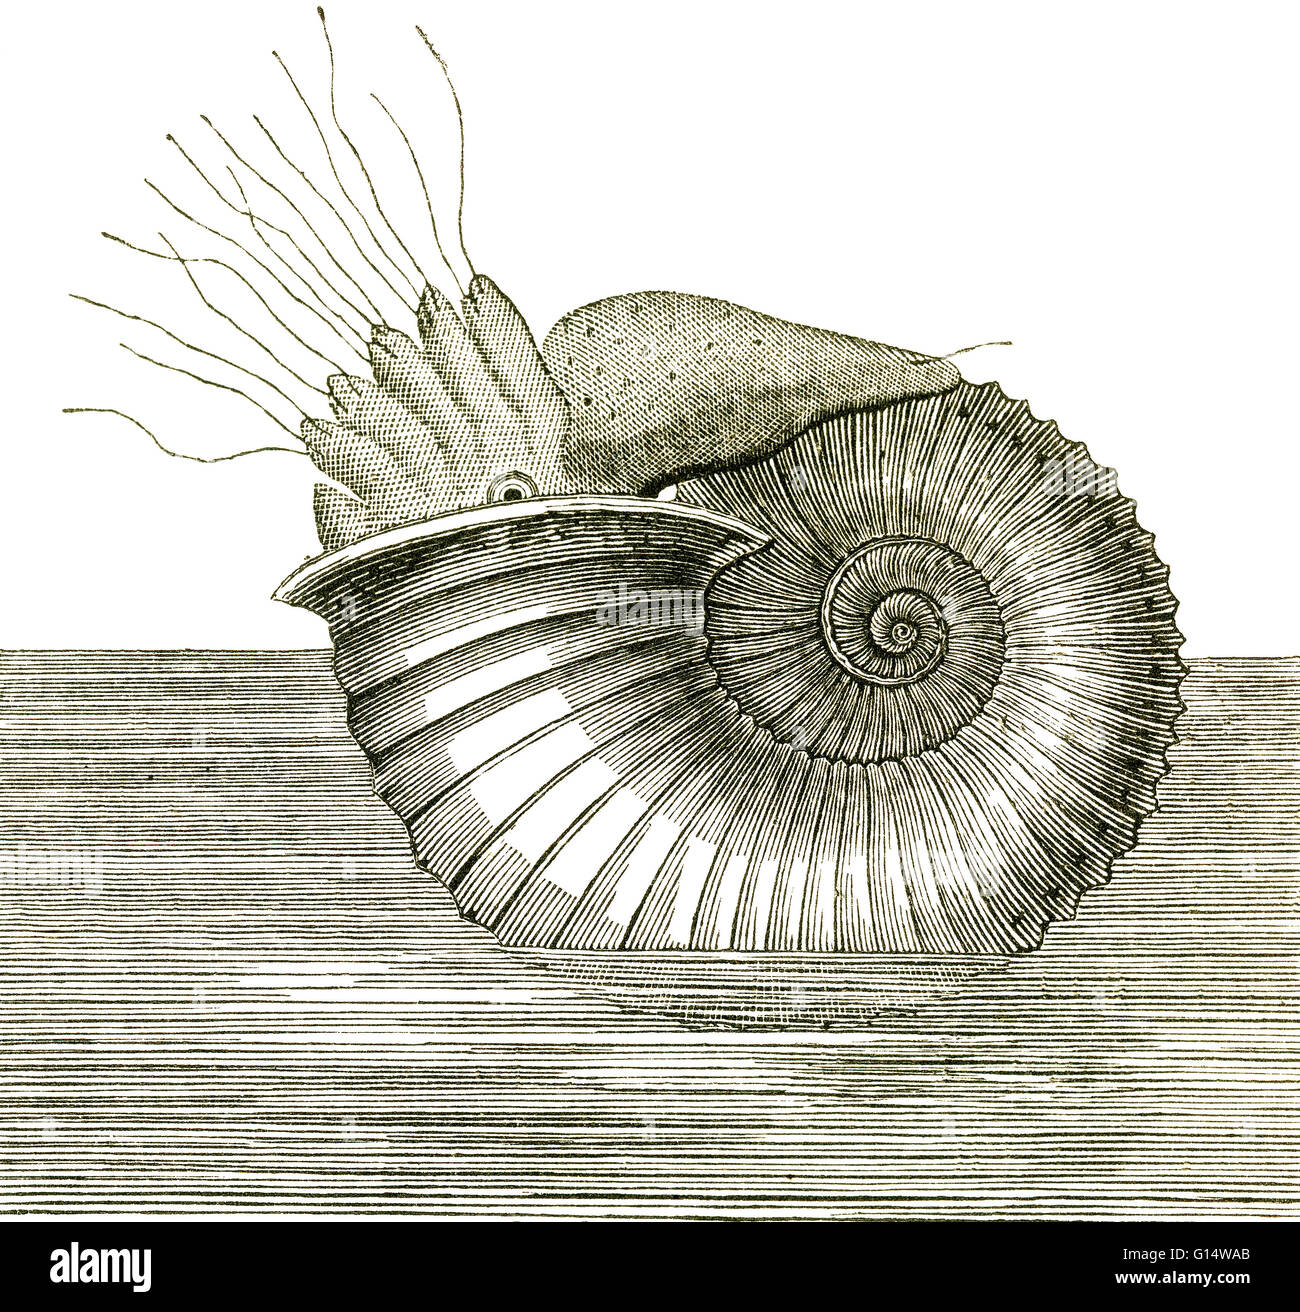 Illustrazione di un ammonita, da Louis Figuier il mondo prima del diluvio, 1867 edizione americana. Figli di Ammon si erano molto abbondanti nel Giurassico, ma i loro corpi morbidi raramente sono stati conservati nei record di fossili. Foto Stock